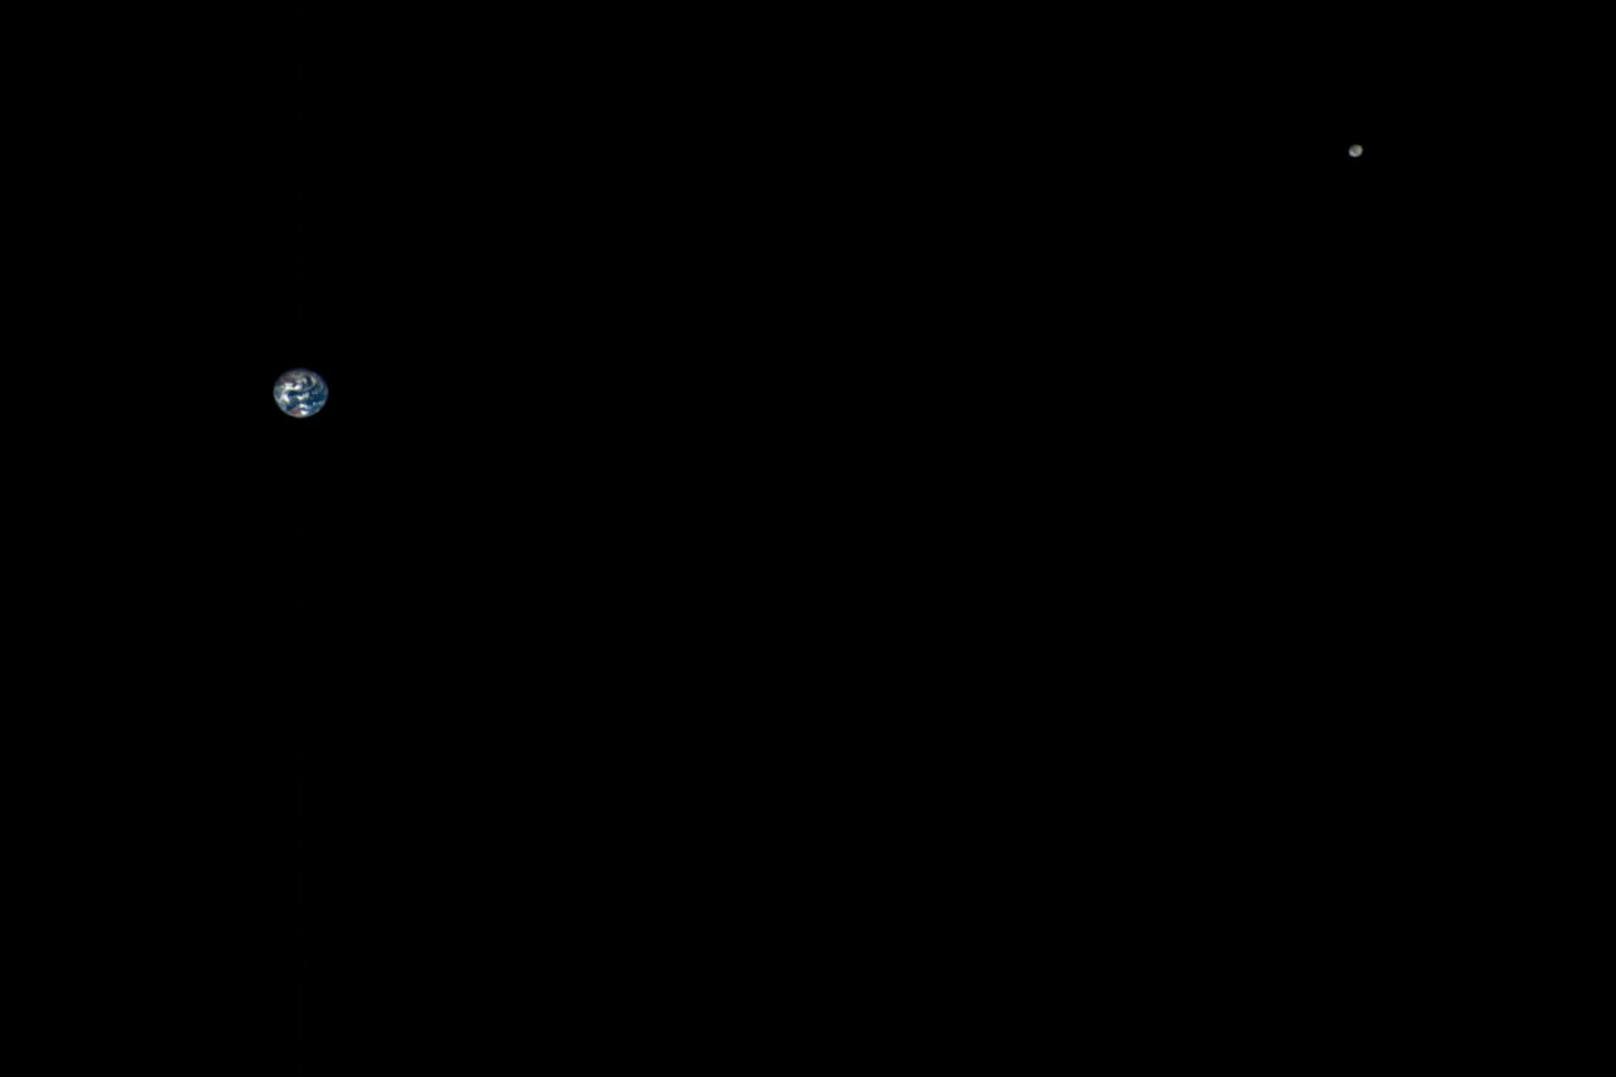 ... unserem eigenen Planeten. Hier die Erde und der Mond auf einer gemeinsamen Aufnahme.